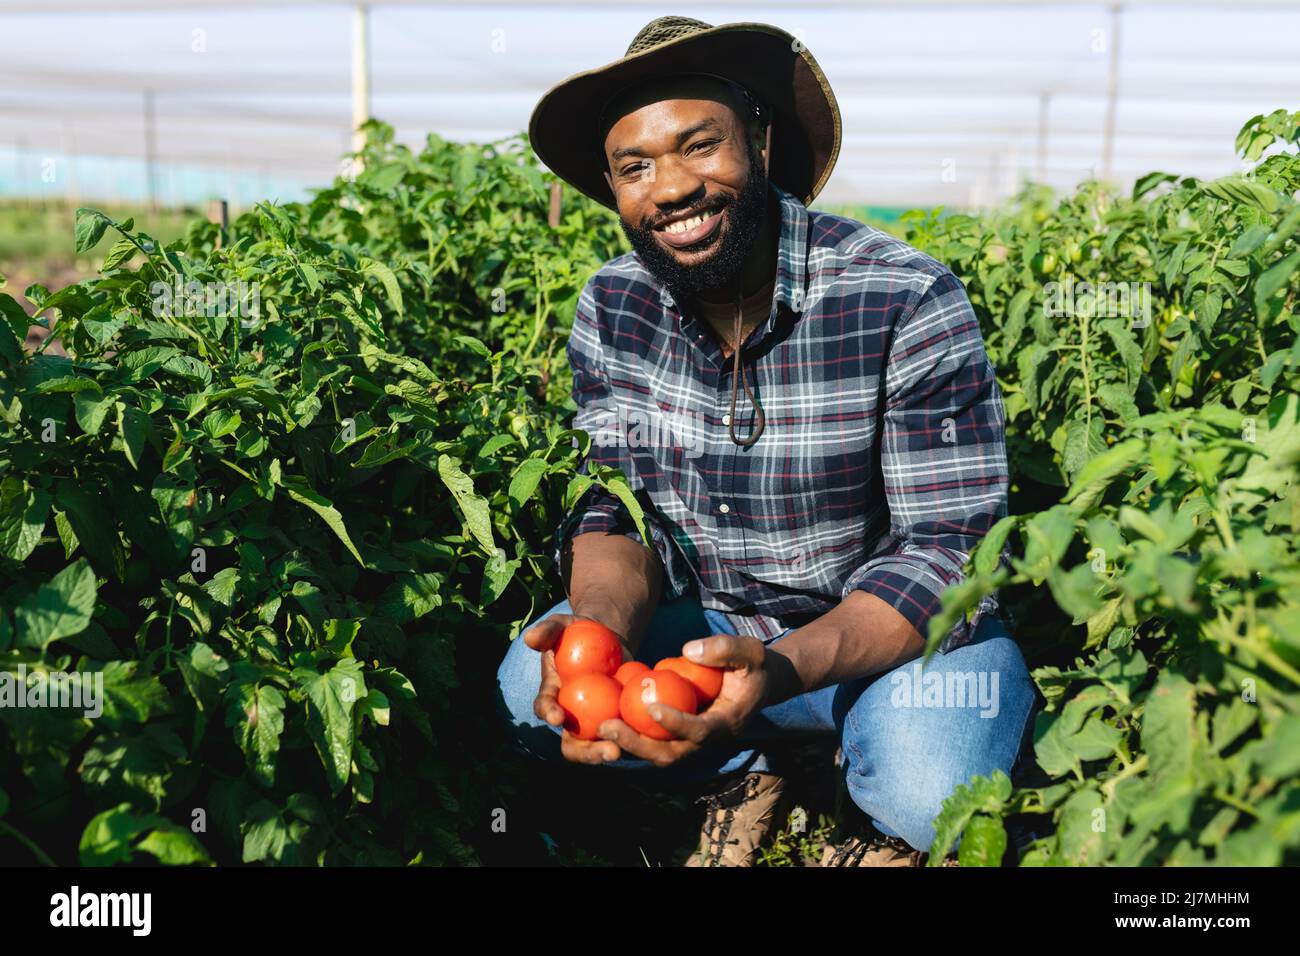 Ritratto di uomo africano americano medio adulto che indossa cappello che tiene i pomodori tra le piante in serra Foto Stock